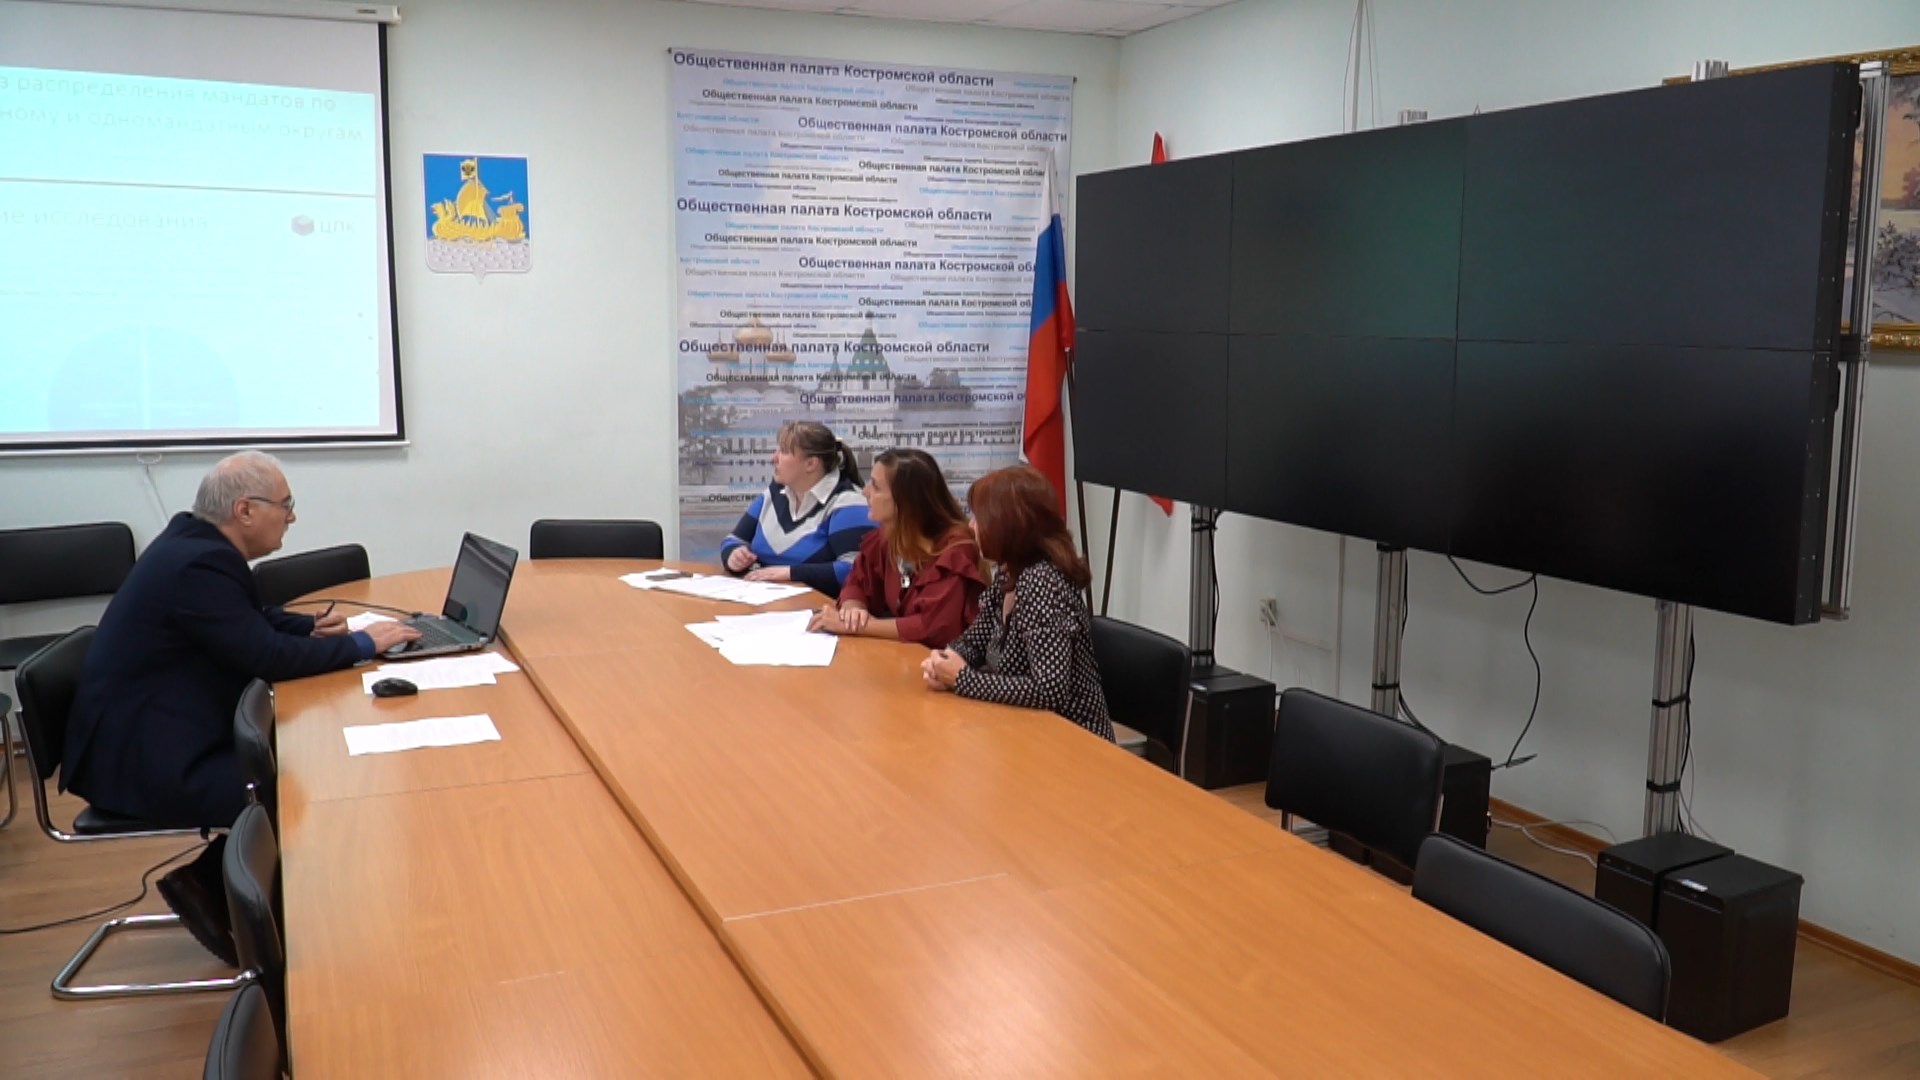 Видеонаблюдение оборудуют на всех избирательных участках Костромской области